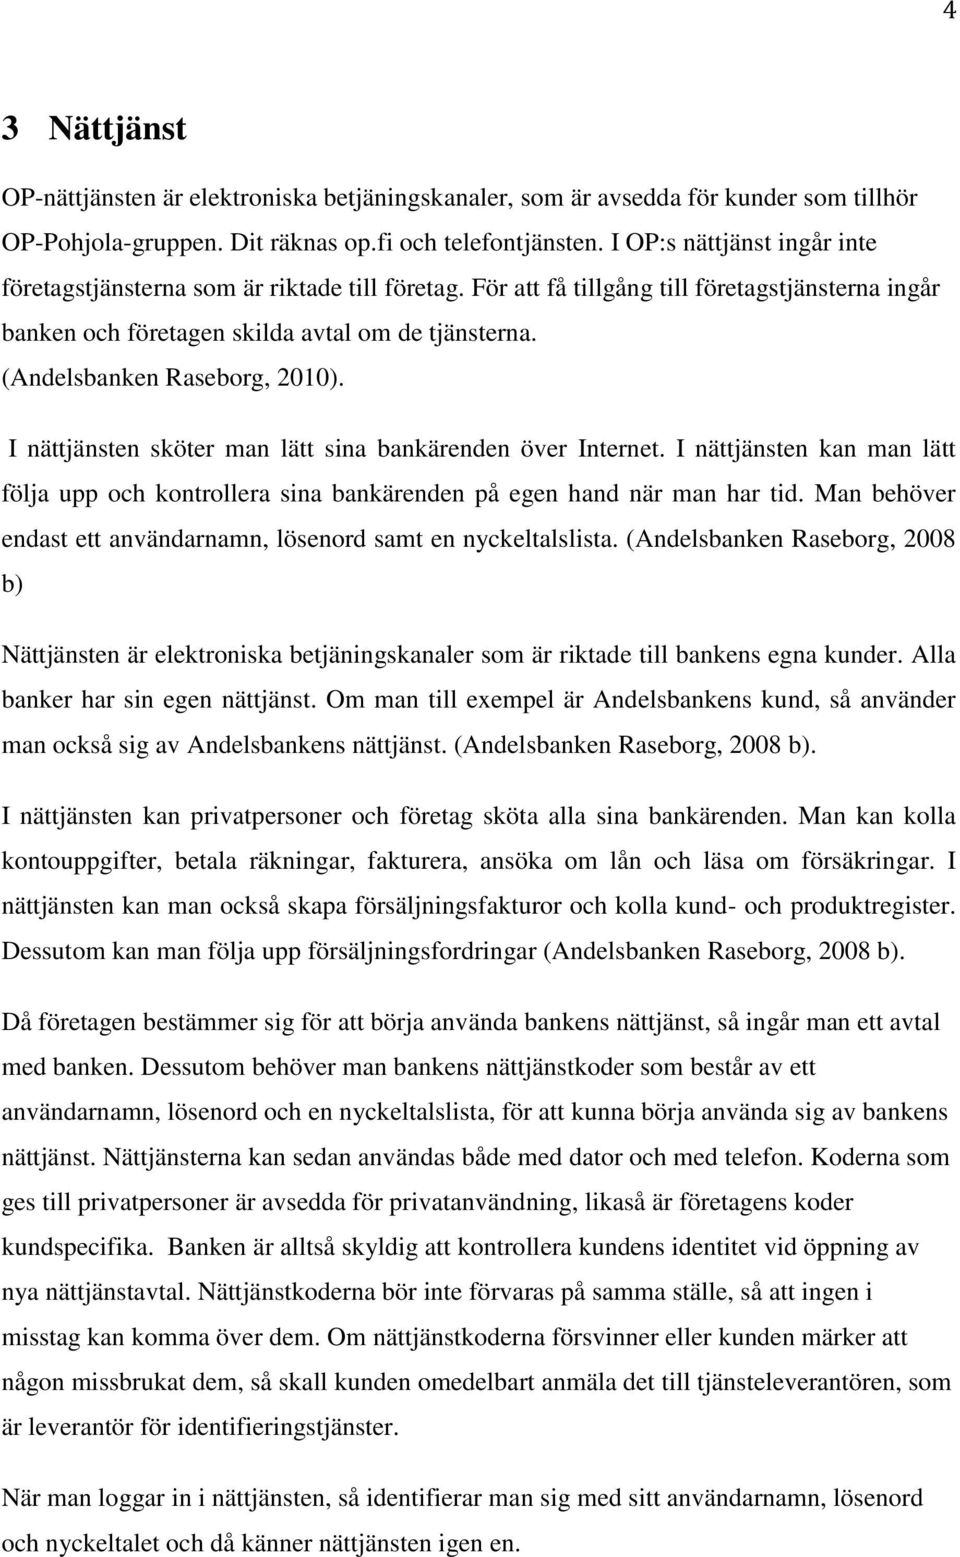 (Andelsbanken Raseborg, 2010). I nättjänsten sköter man lätt sina bankärenden över Internet. I nättjänsten kan man lätt följa upp och kontrollera sina bankärenden på egen hand när man har tid.